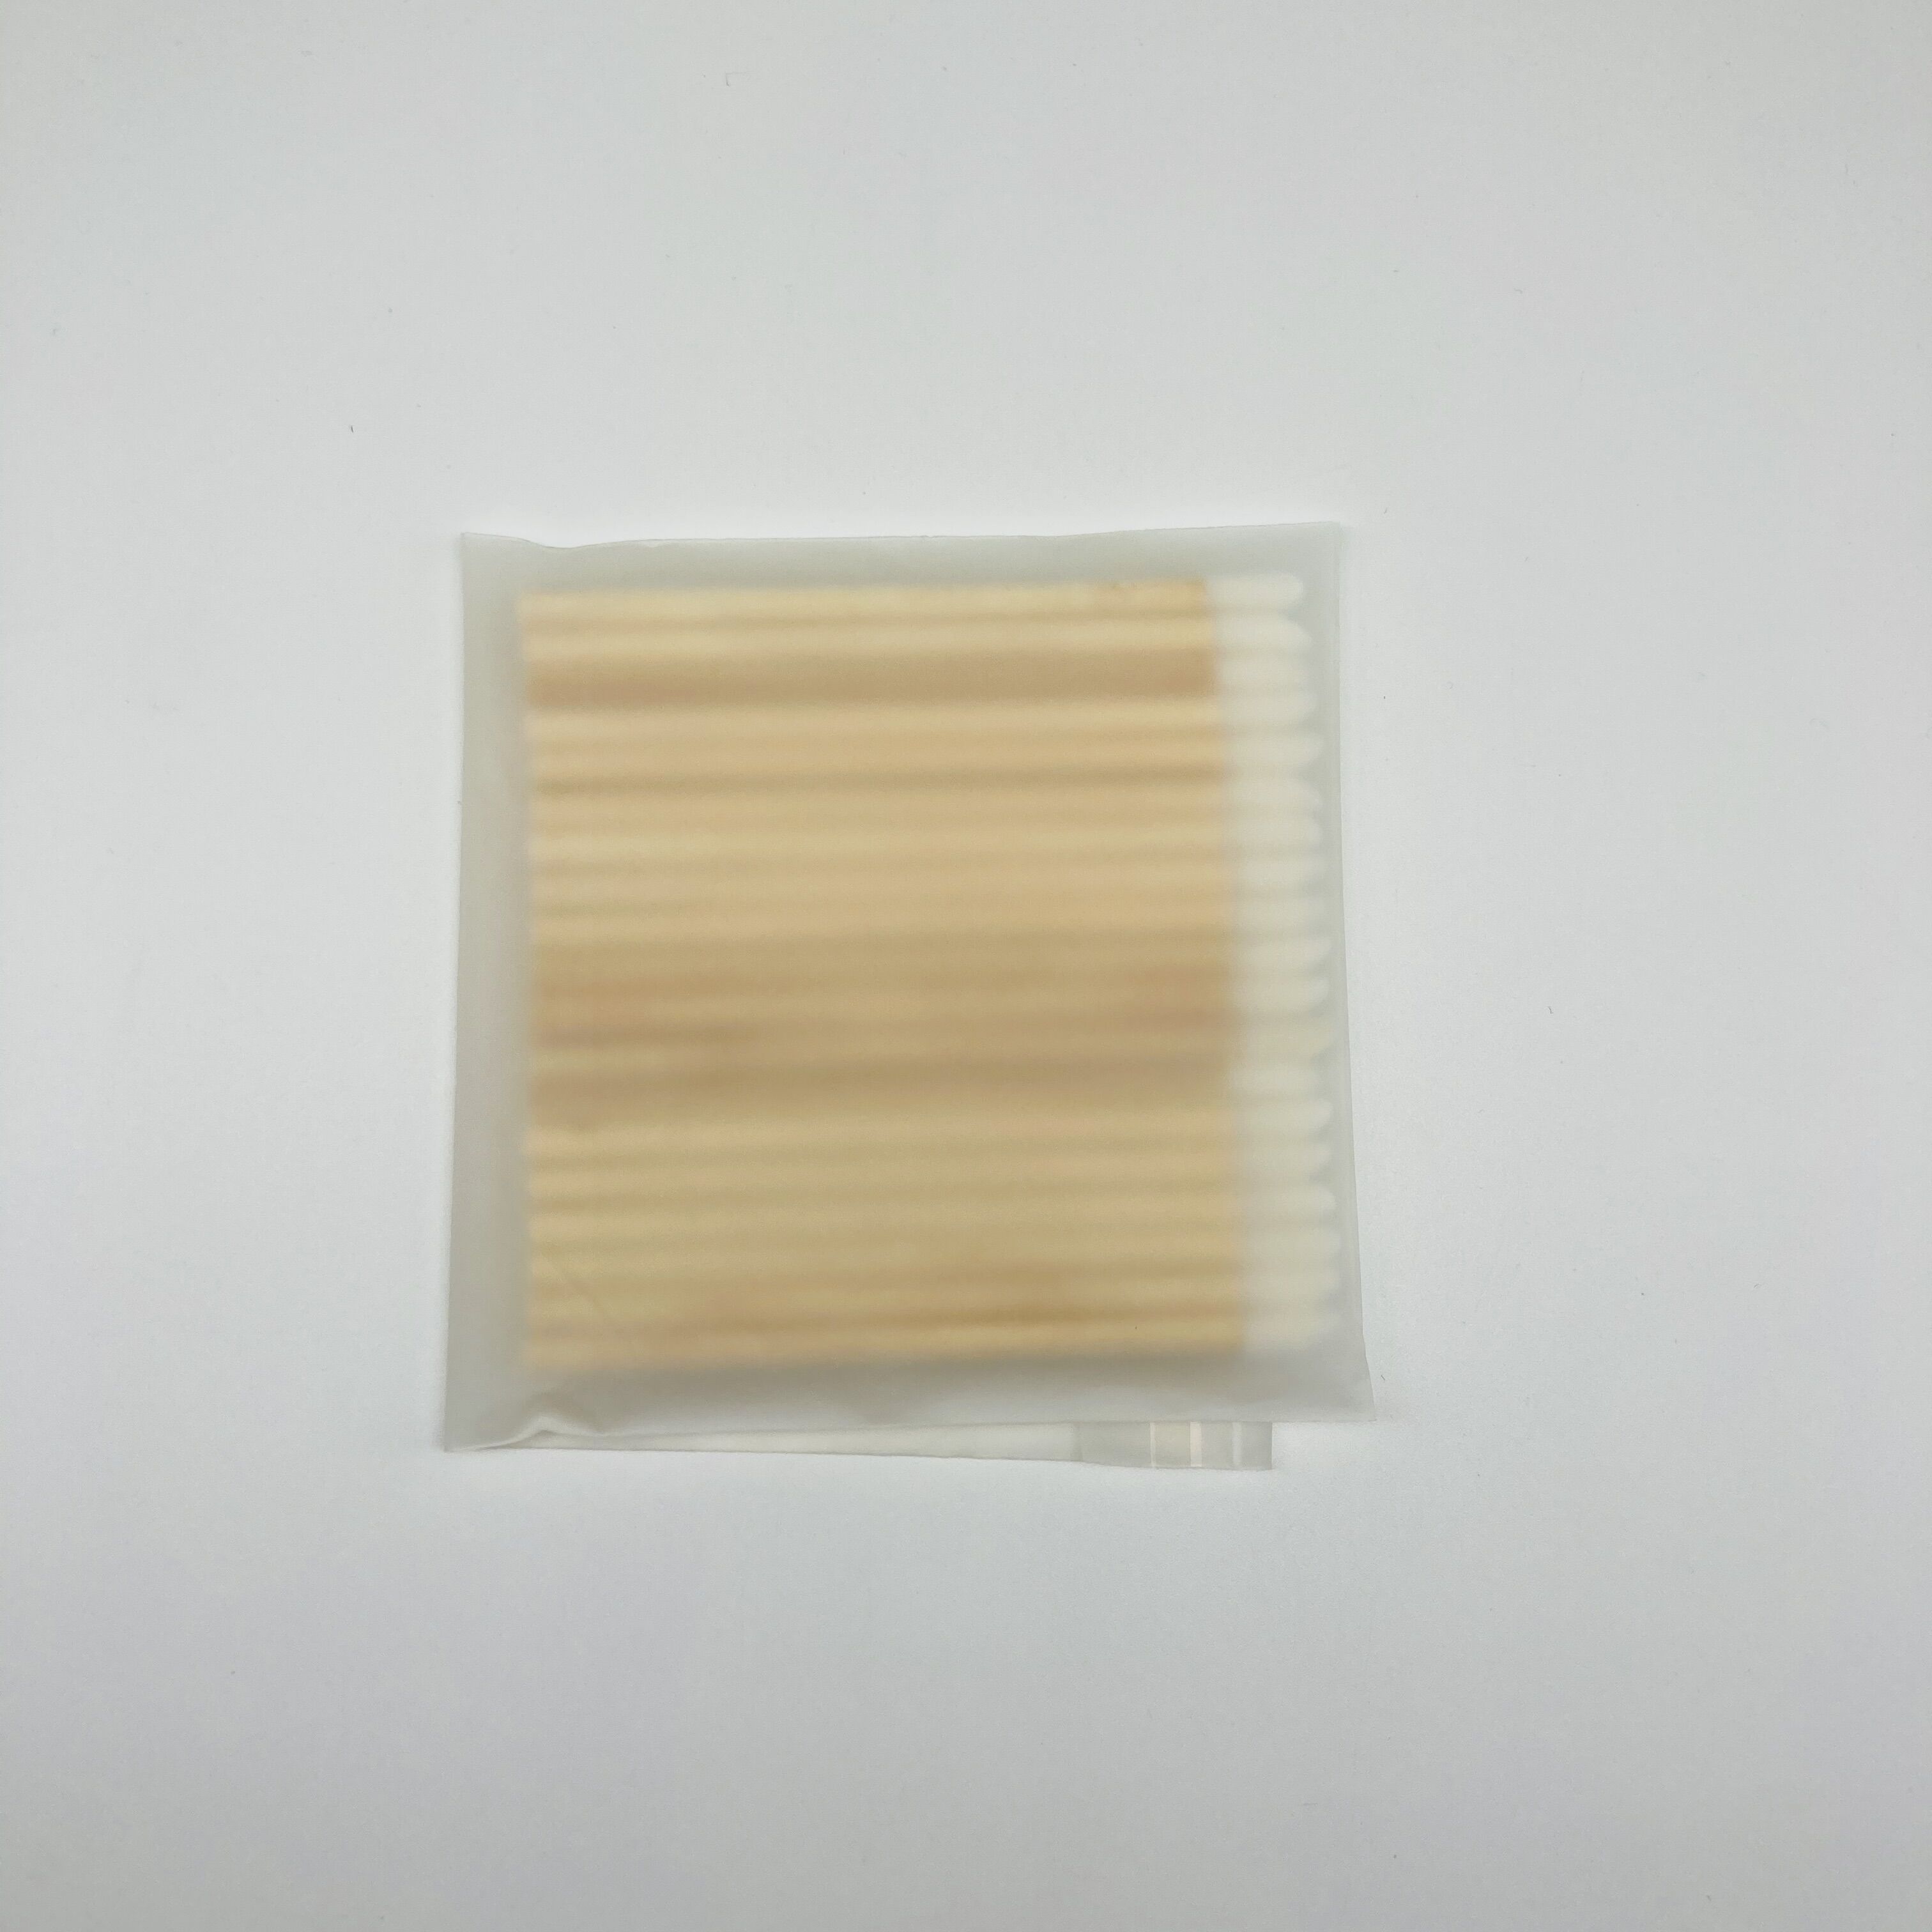 Emballage de sac biodégradable pinceau à lèvres en bambou applicateur jetable écologique